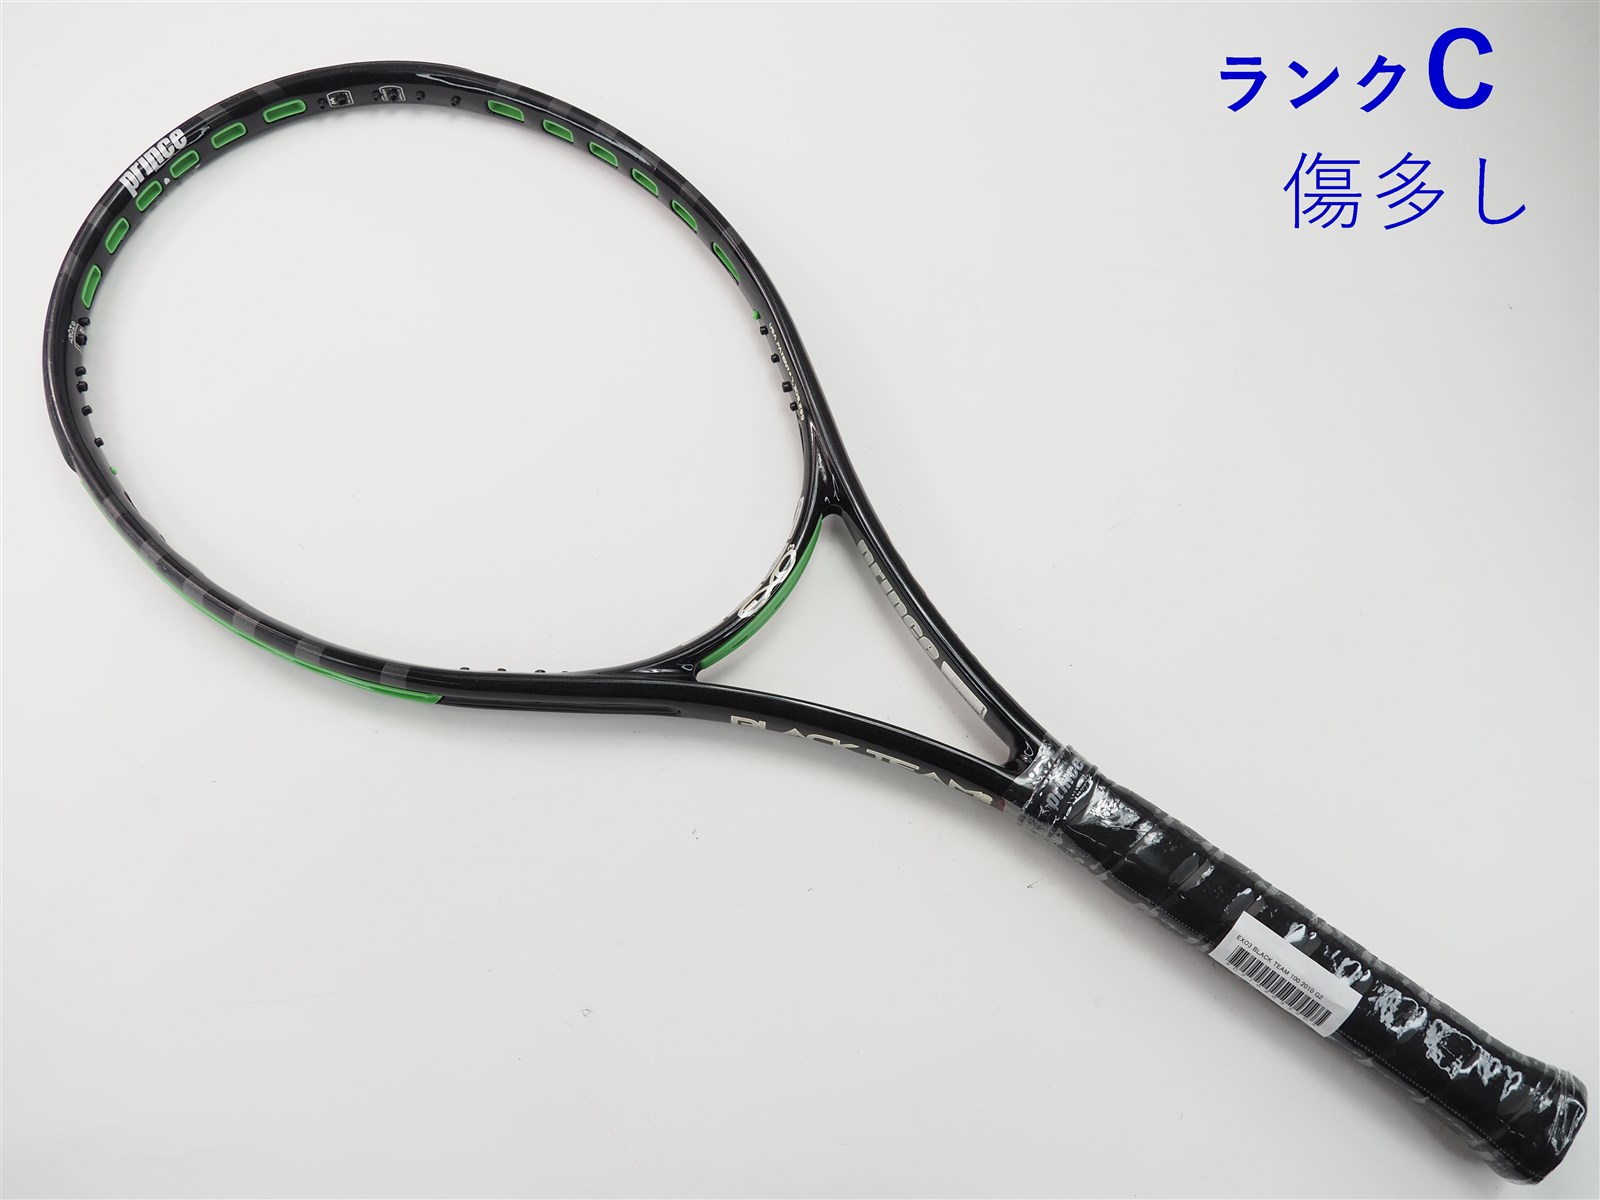 テニスラケット プリンス イーエックスオースリー シャーク 98T 2013年モデル (G2)PRINCE EXO3 SHARK 98T 2013元グリップ交換済み付属品